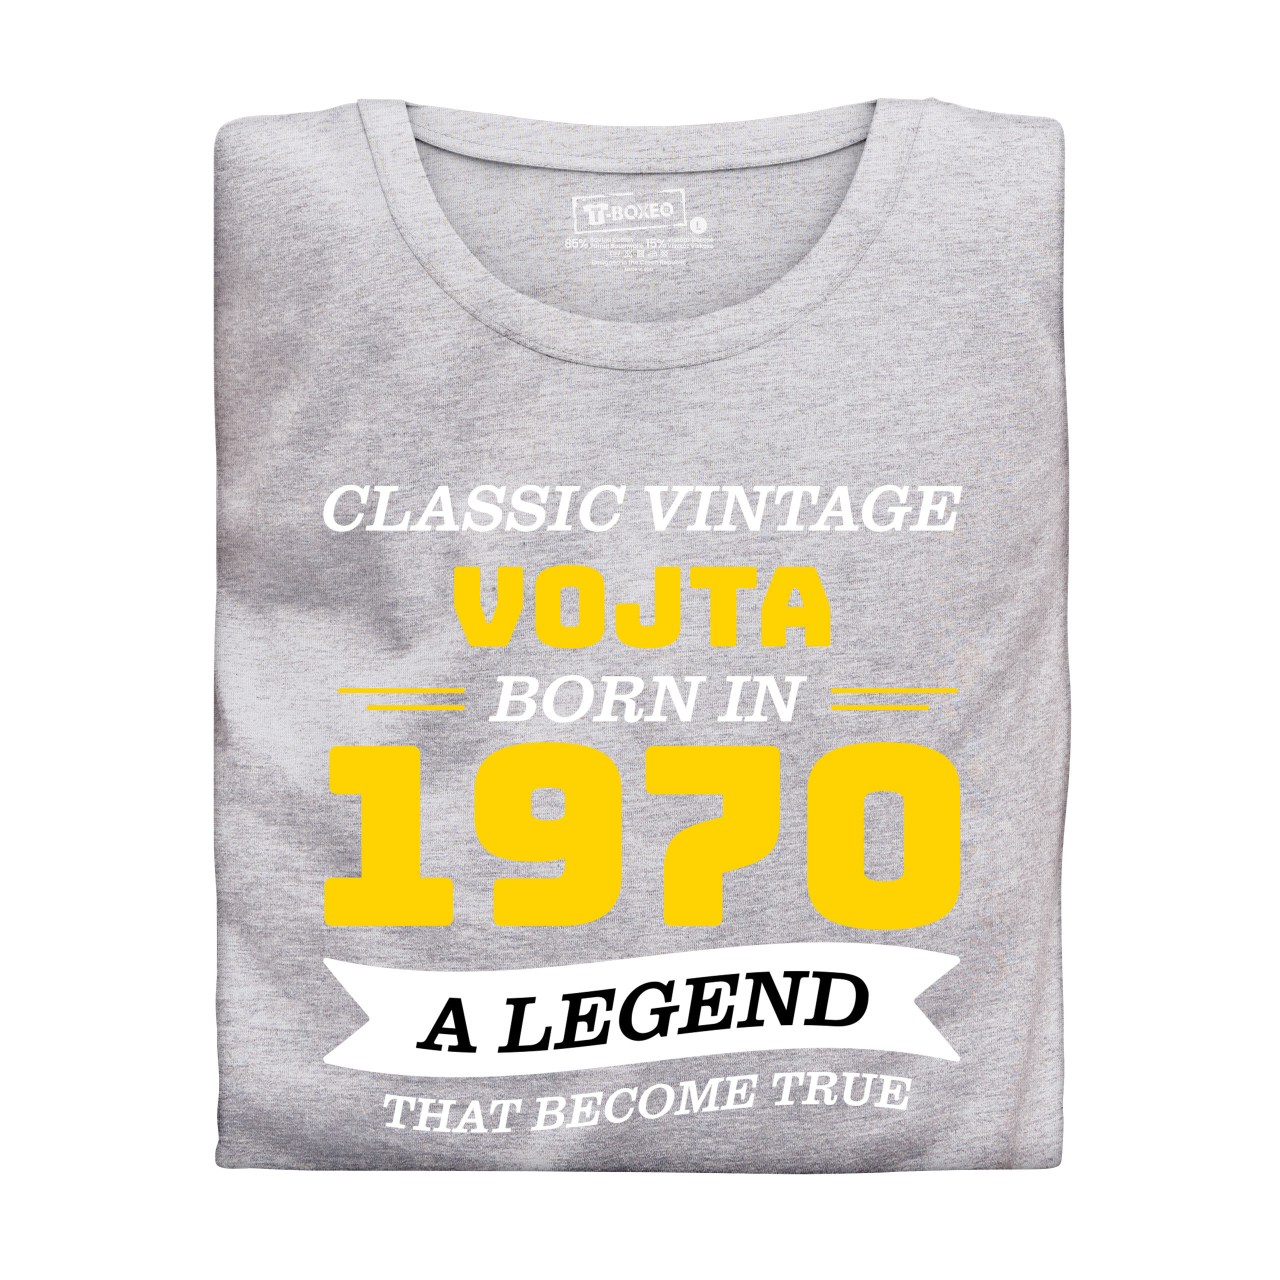 Pánské tričko s potiskem “Classic Vintage” s vlastním jménem a rokem narození